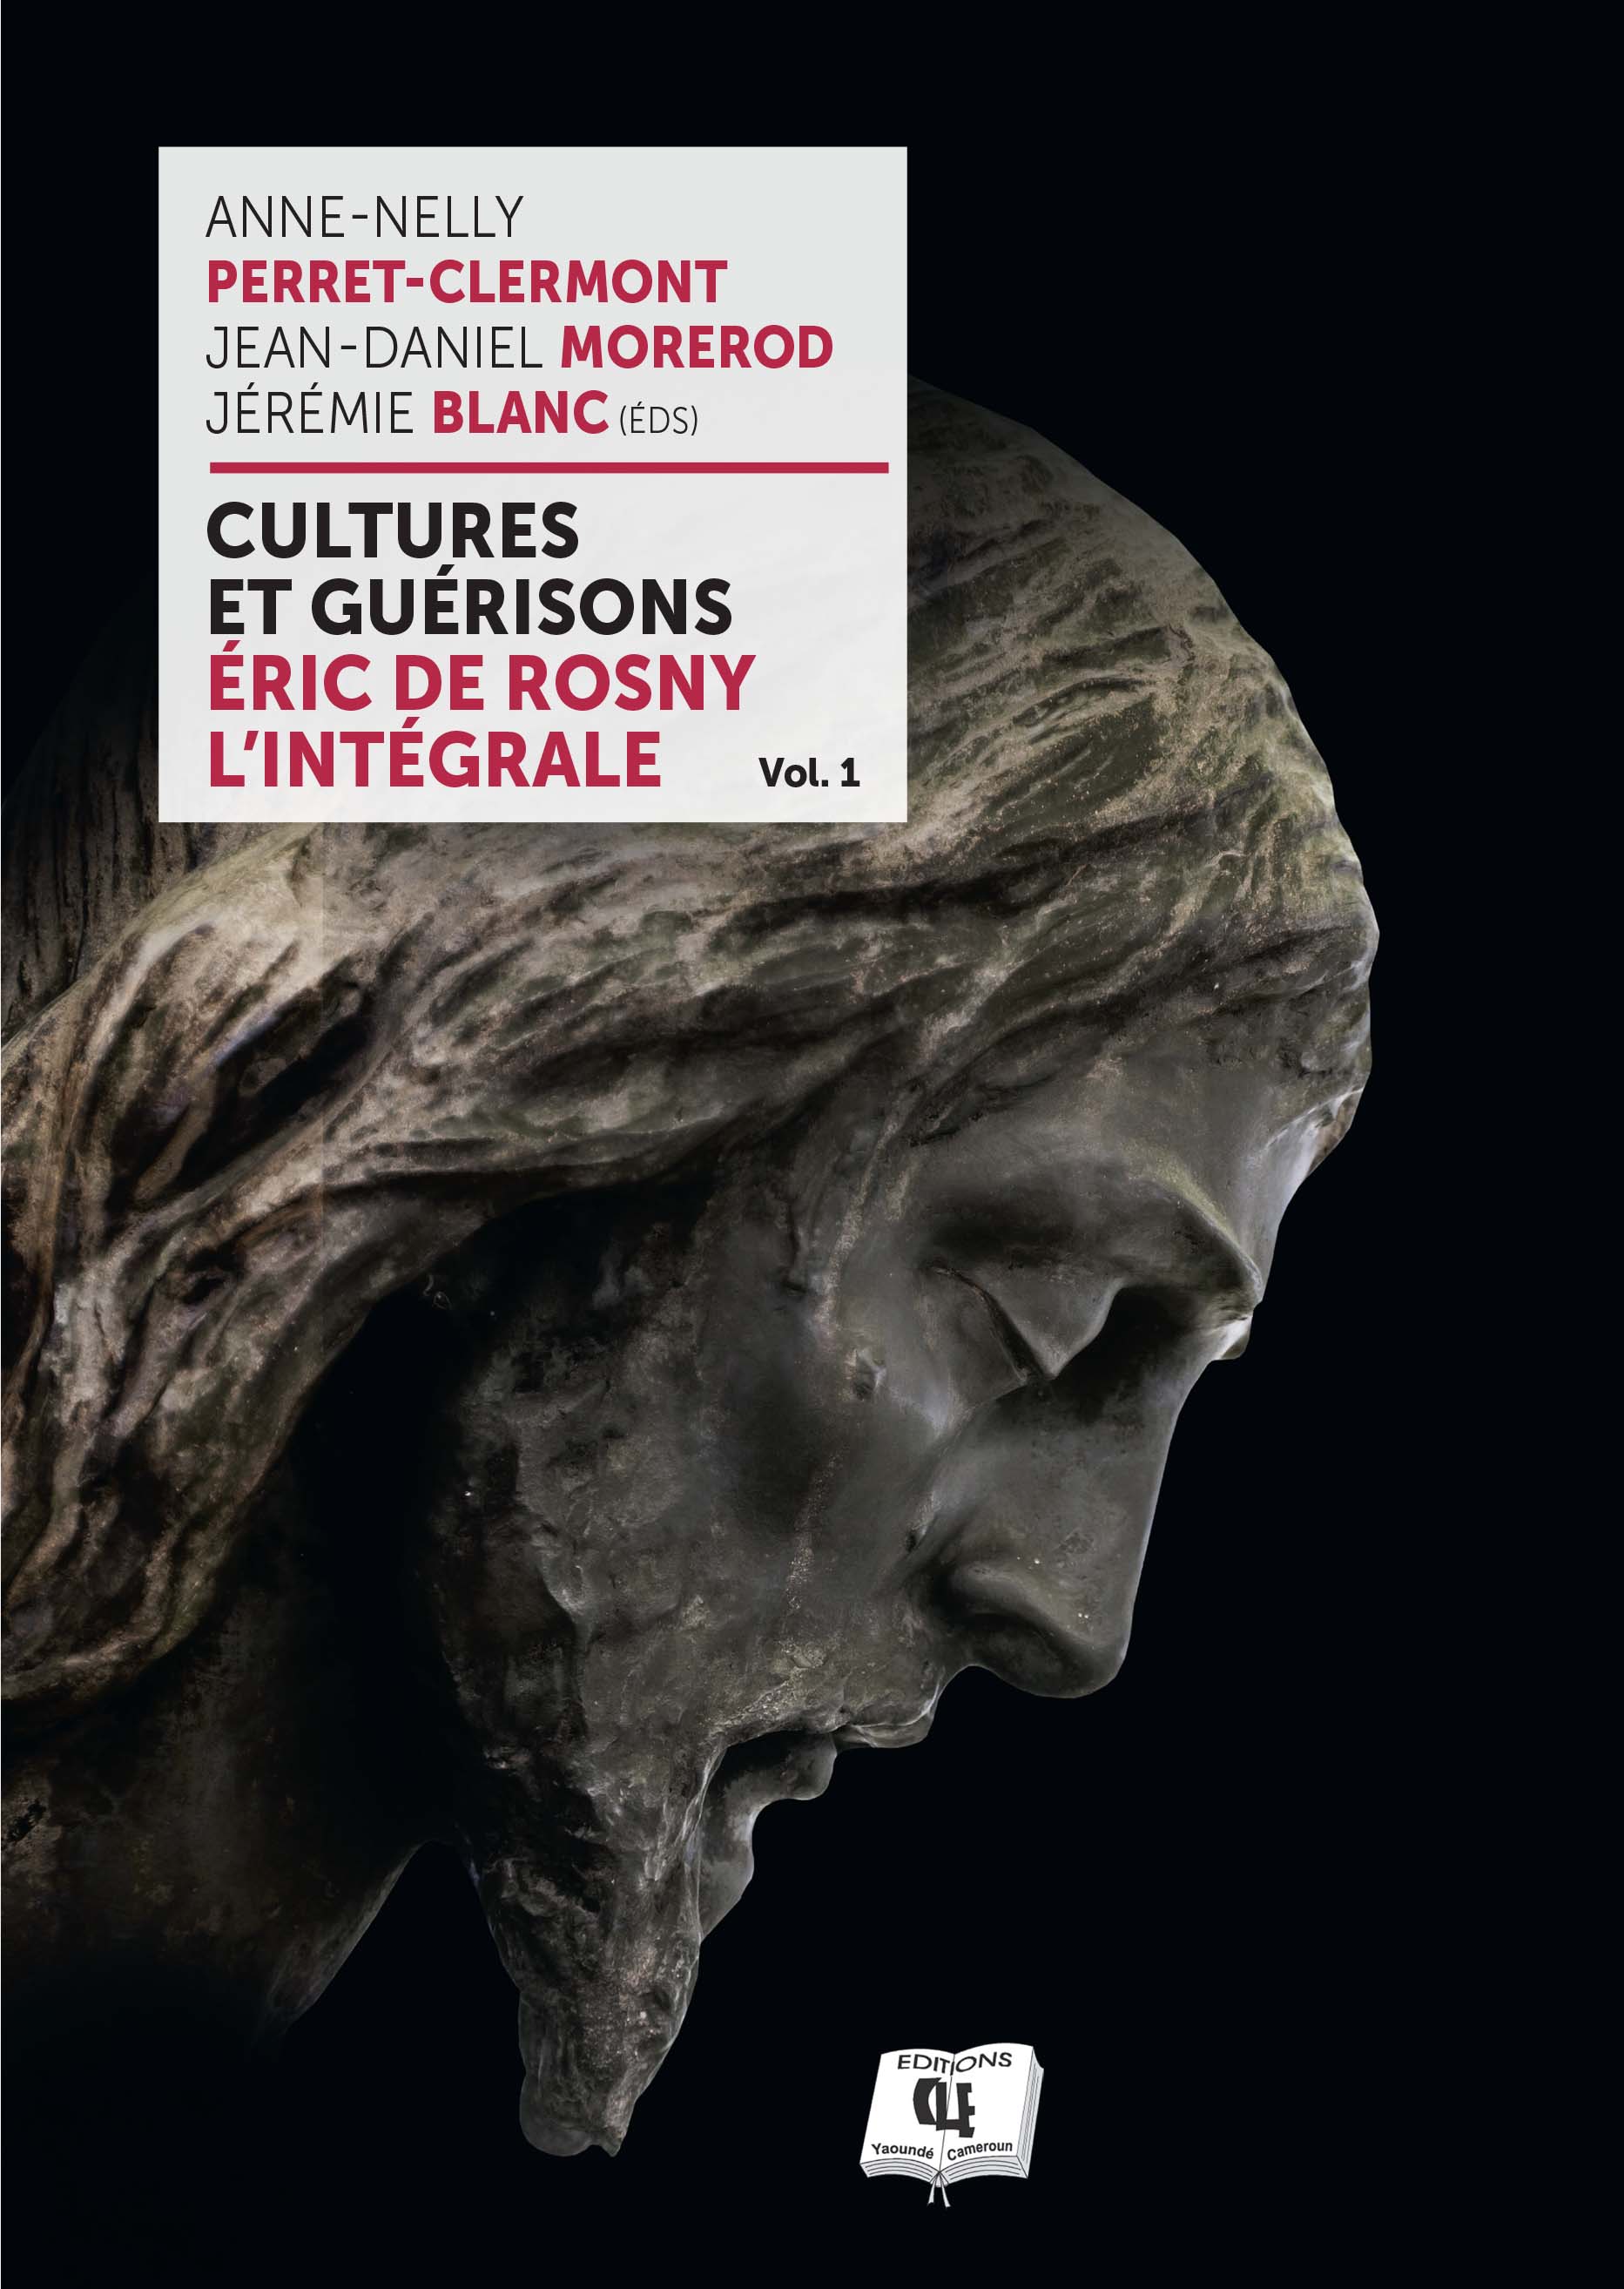 Cultures et guérisons (Volume I)